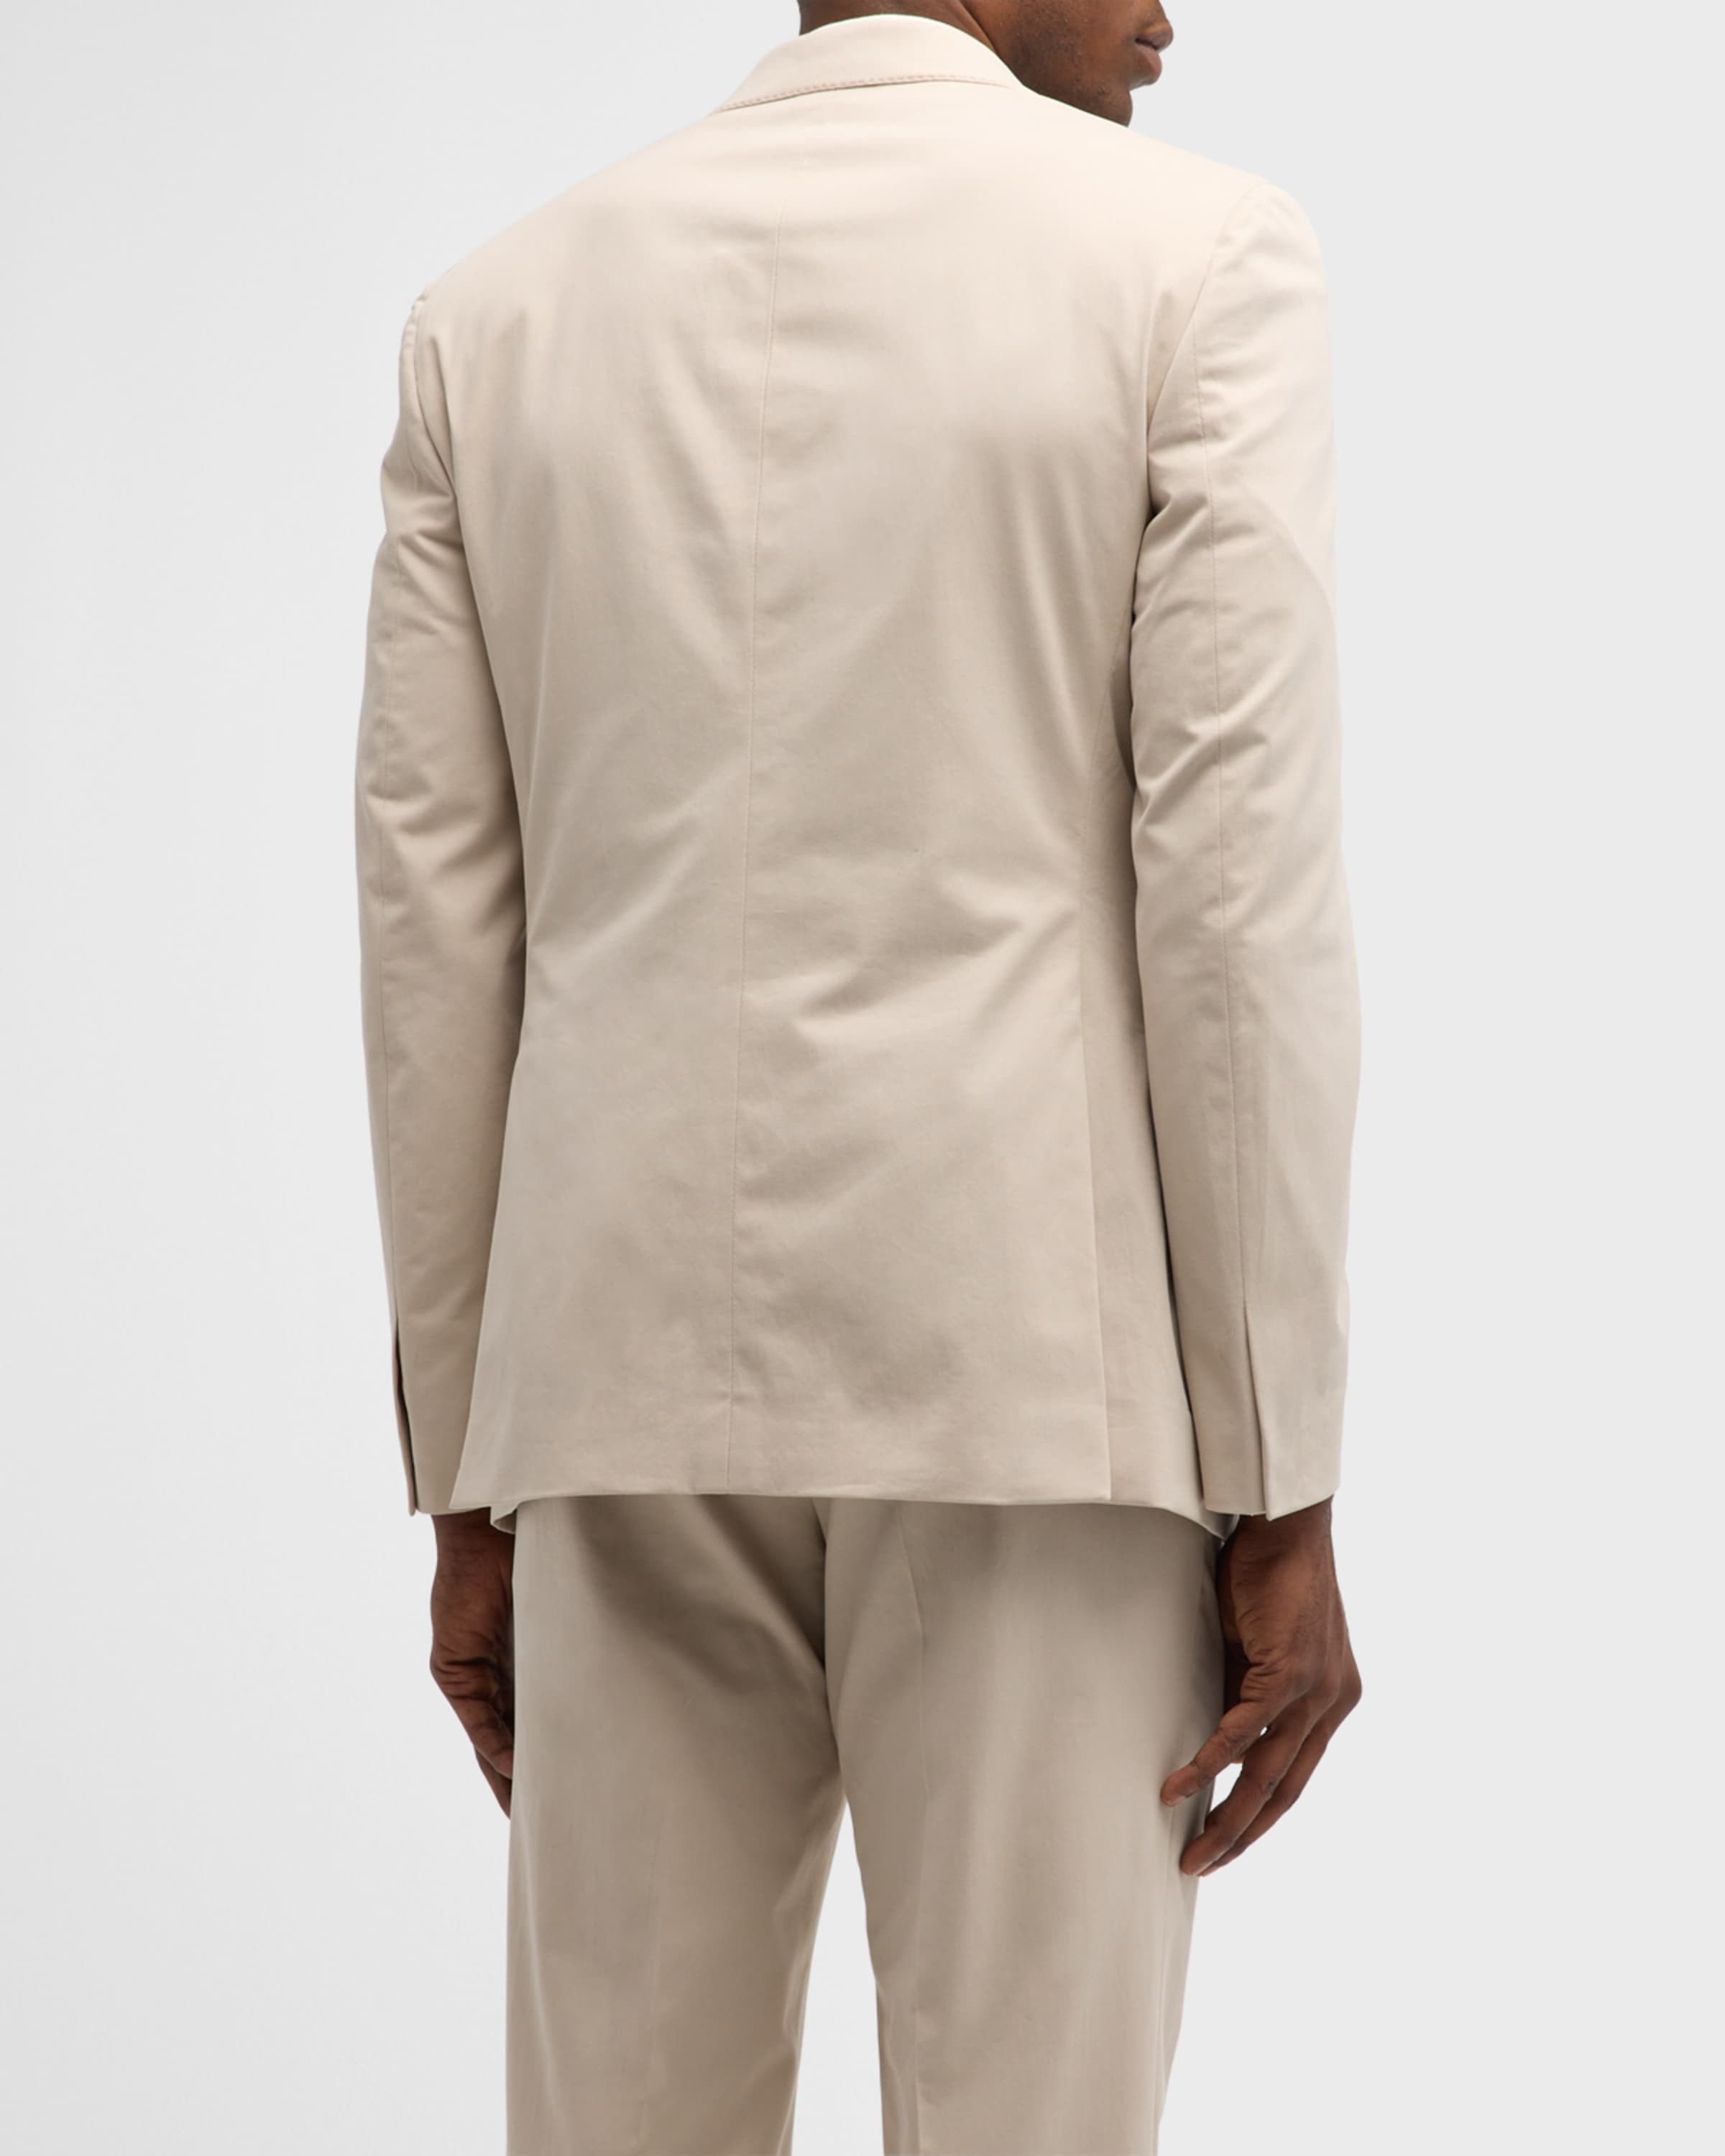 Men's Solid Cashmere-Cotton Suit - 5